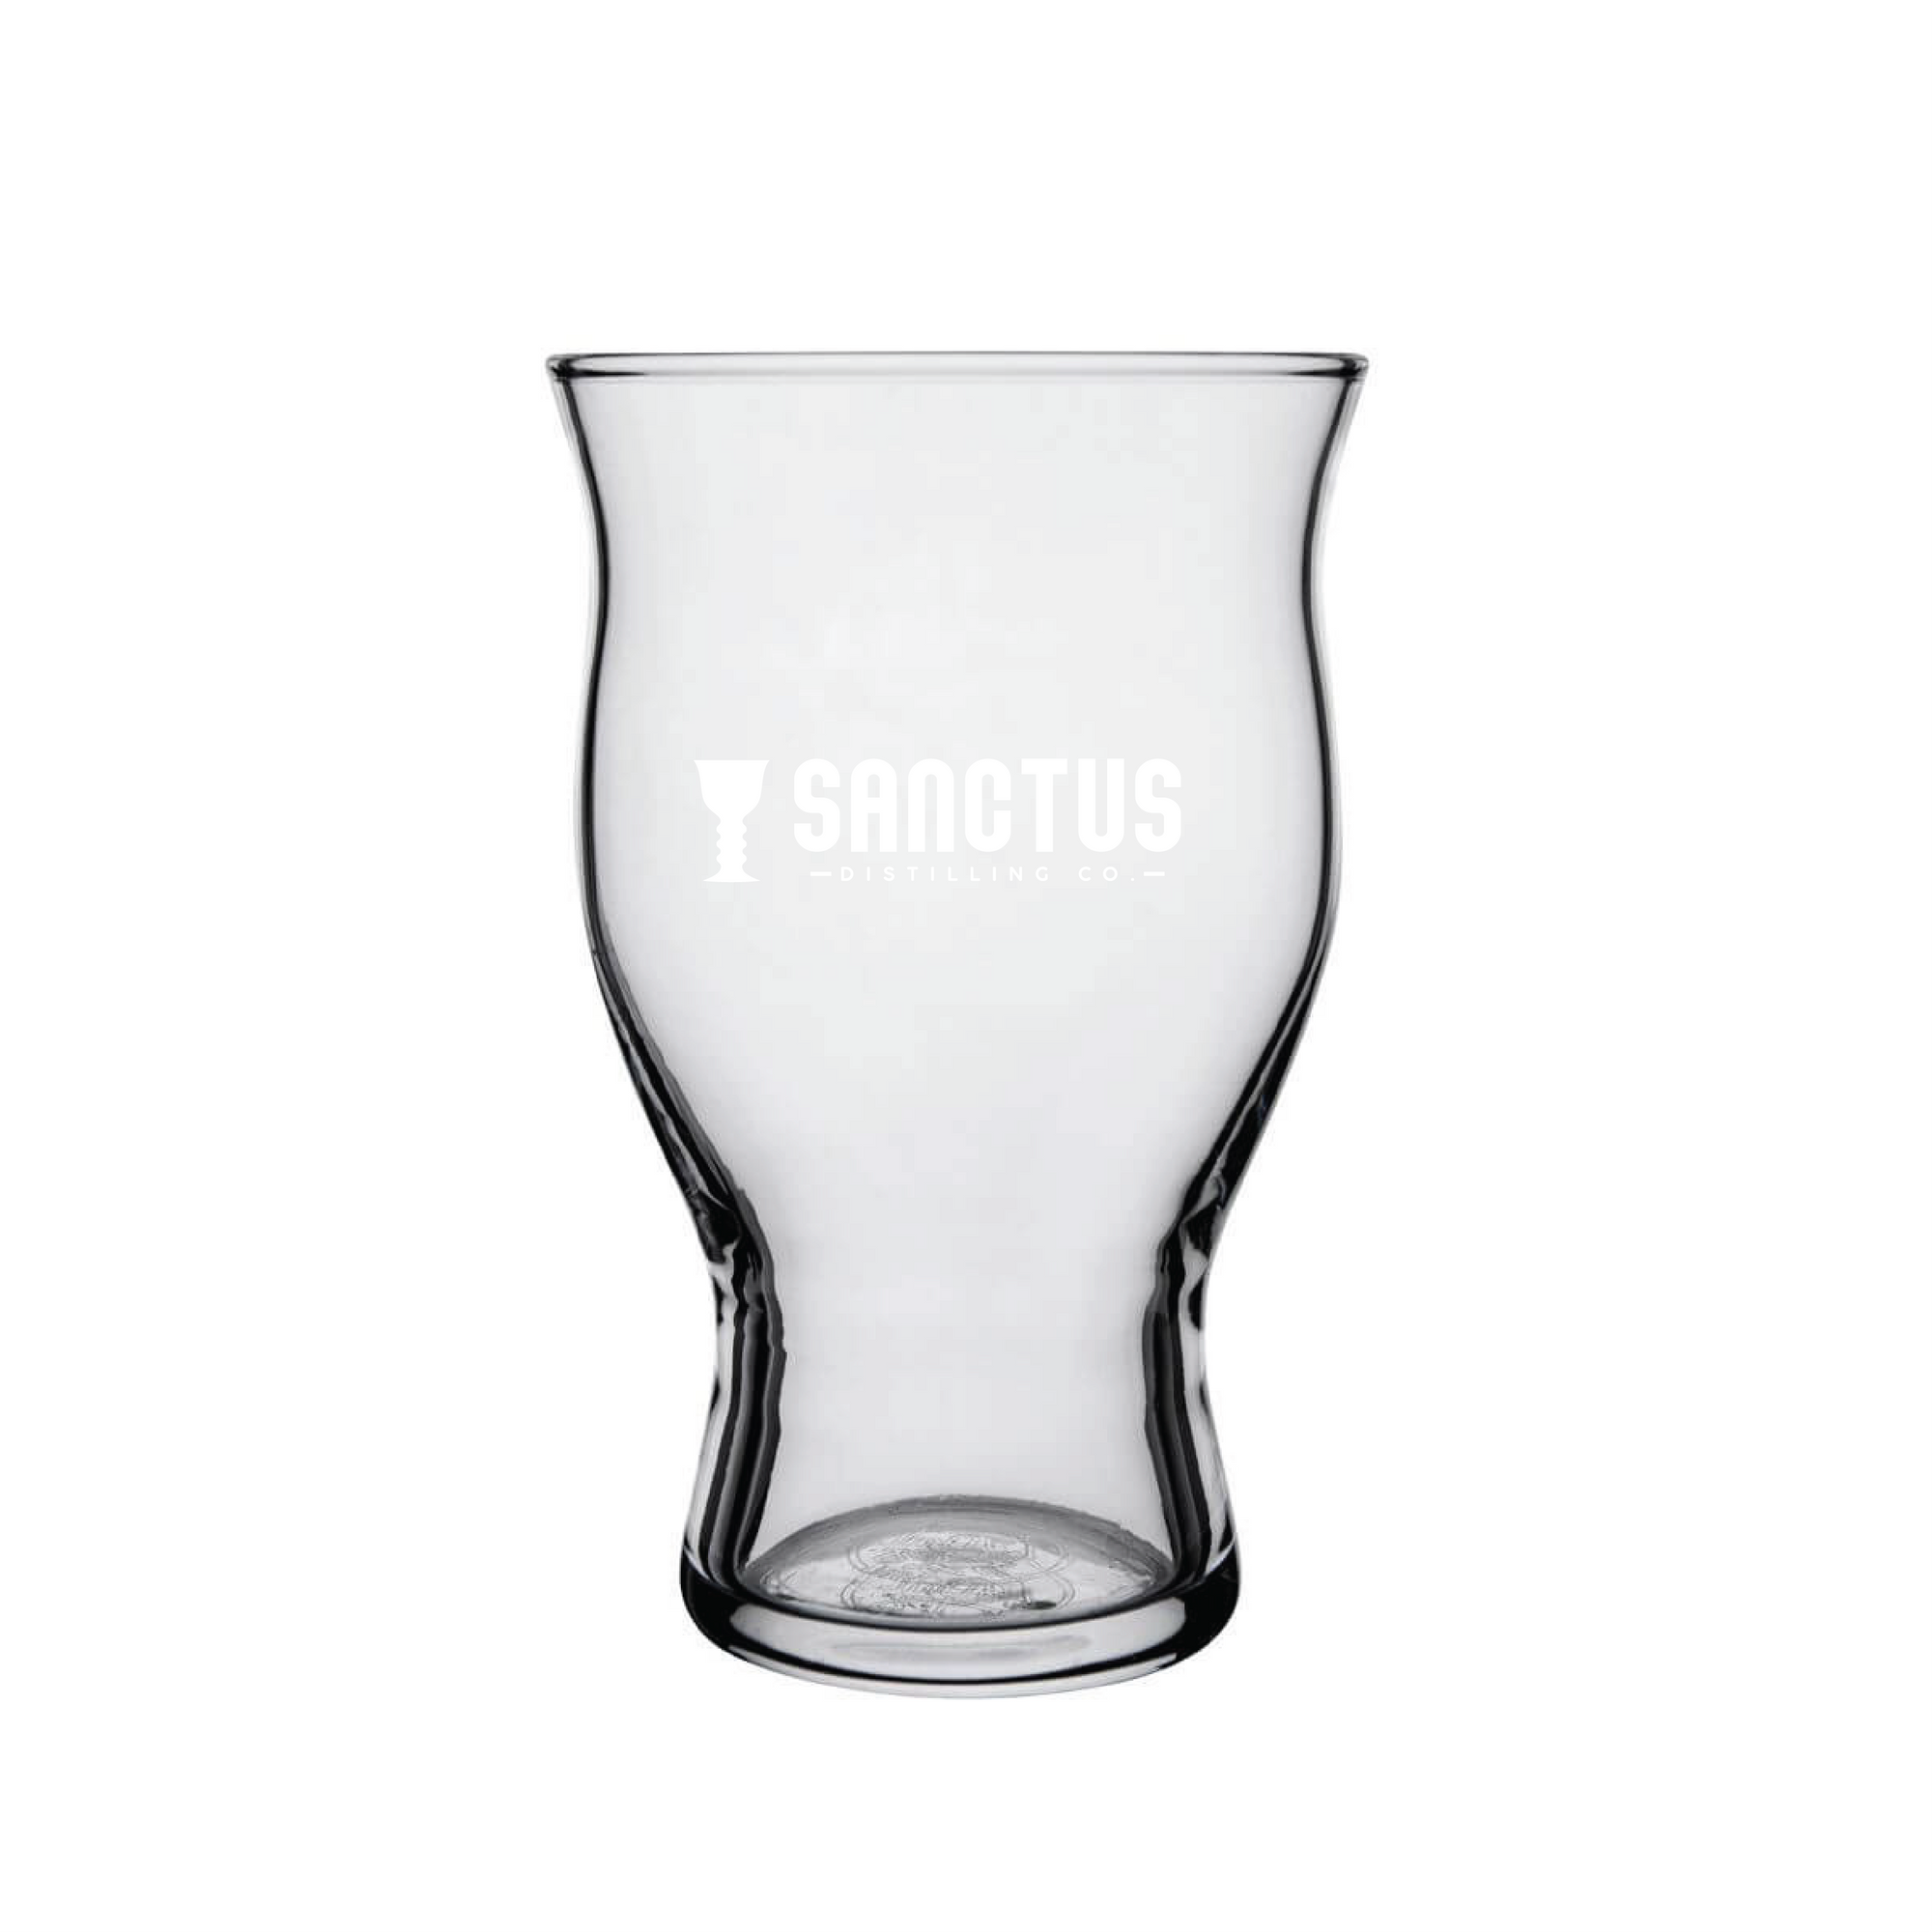 Sanctus Beer Glass